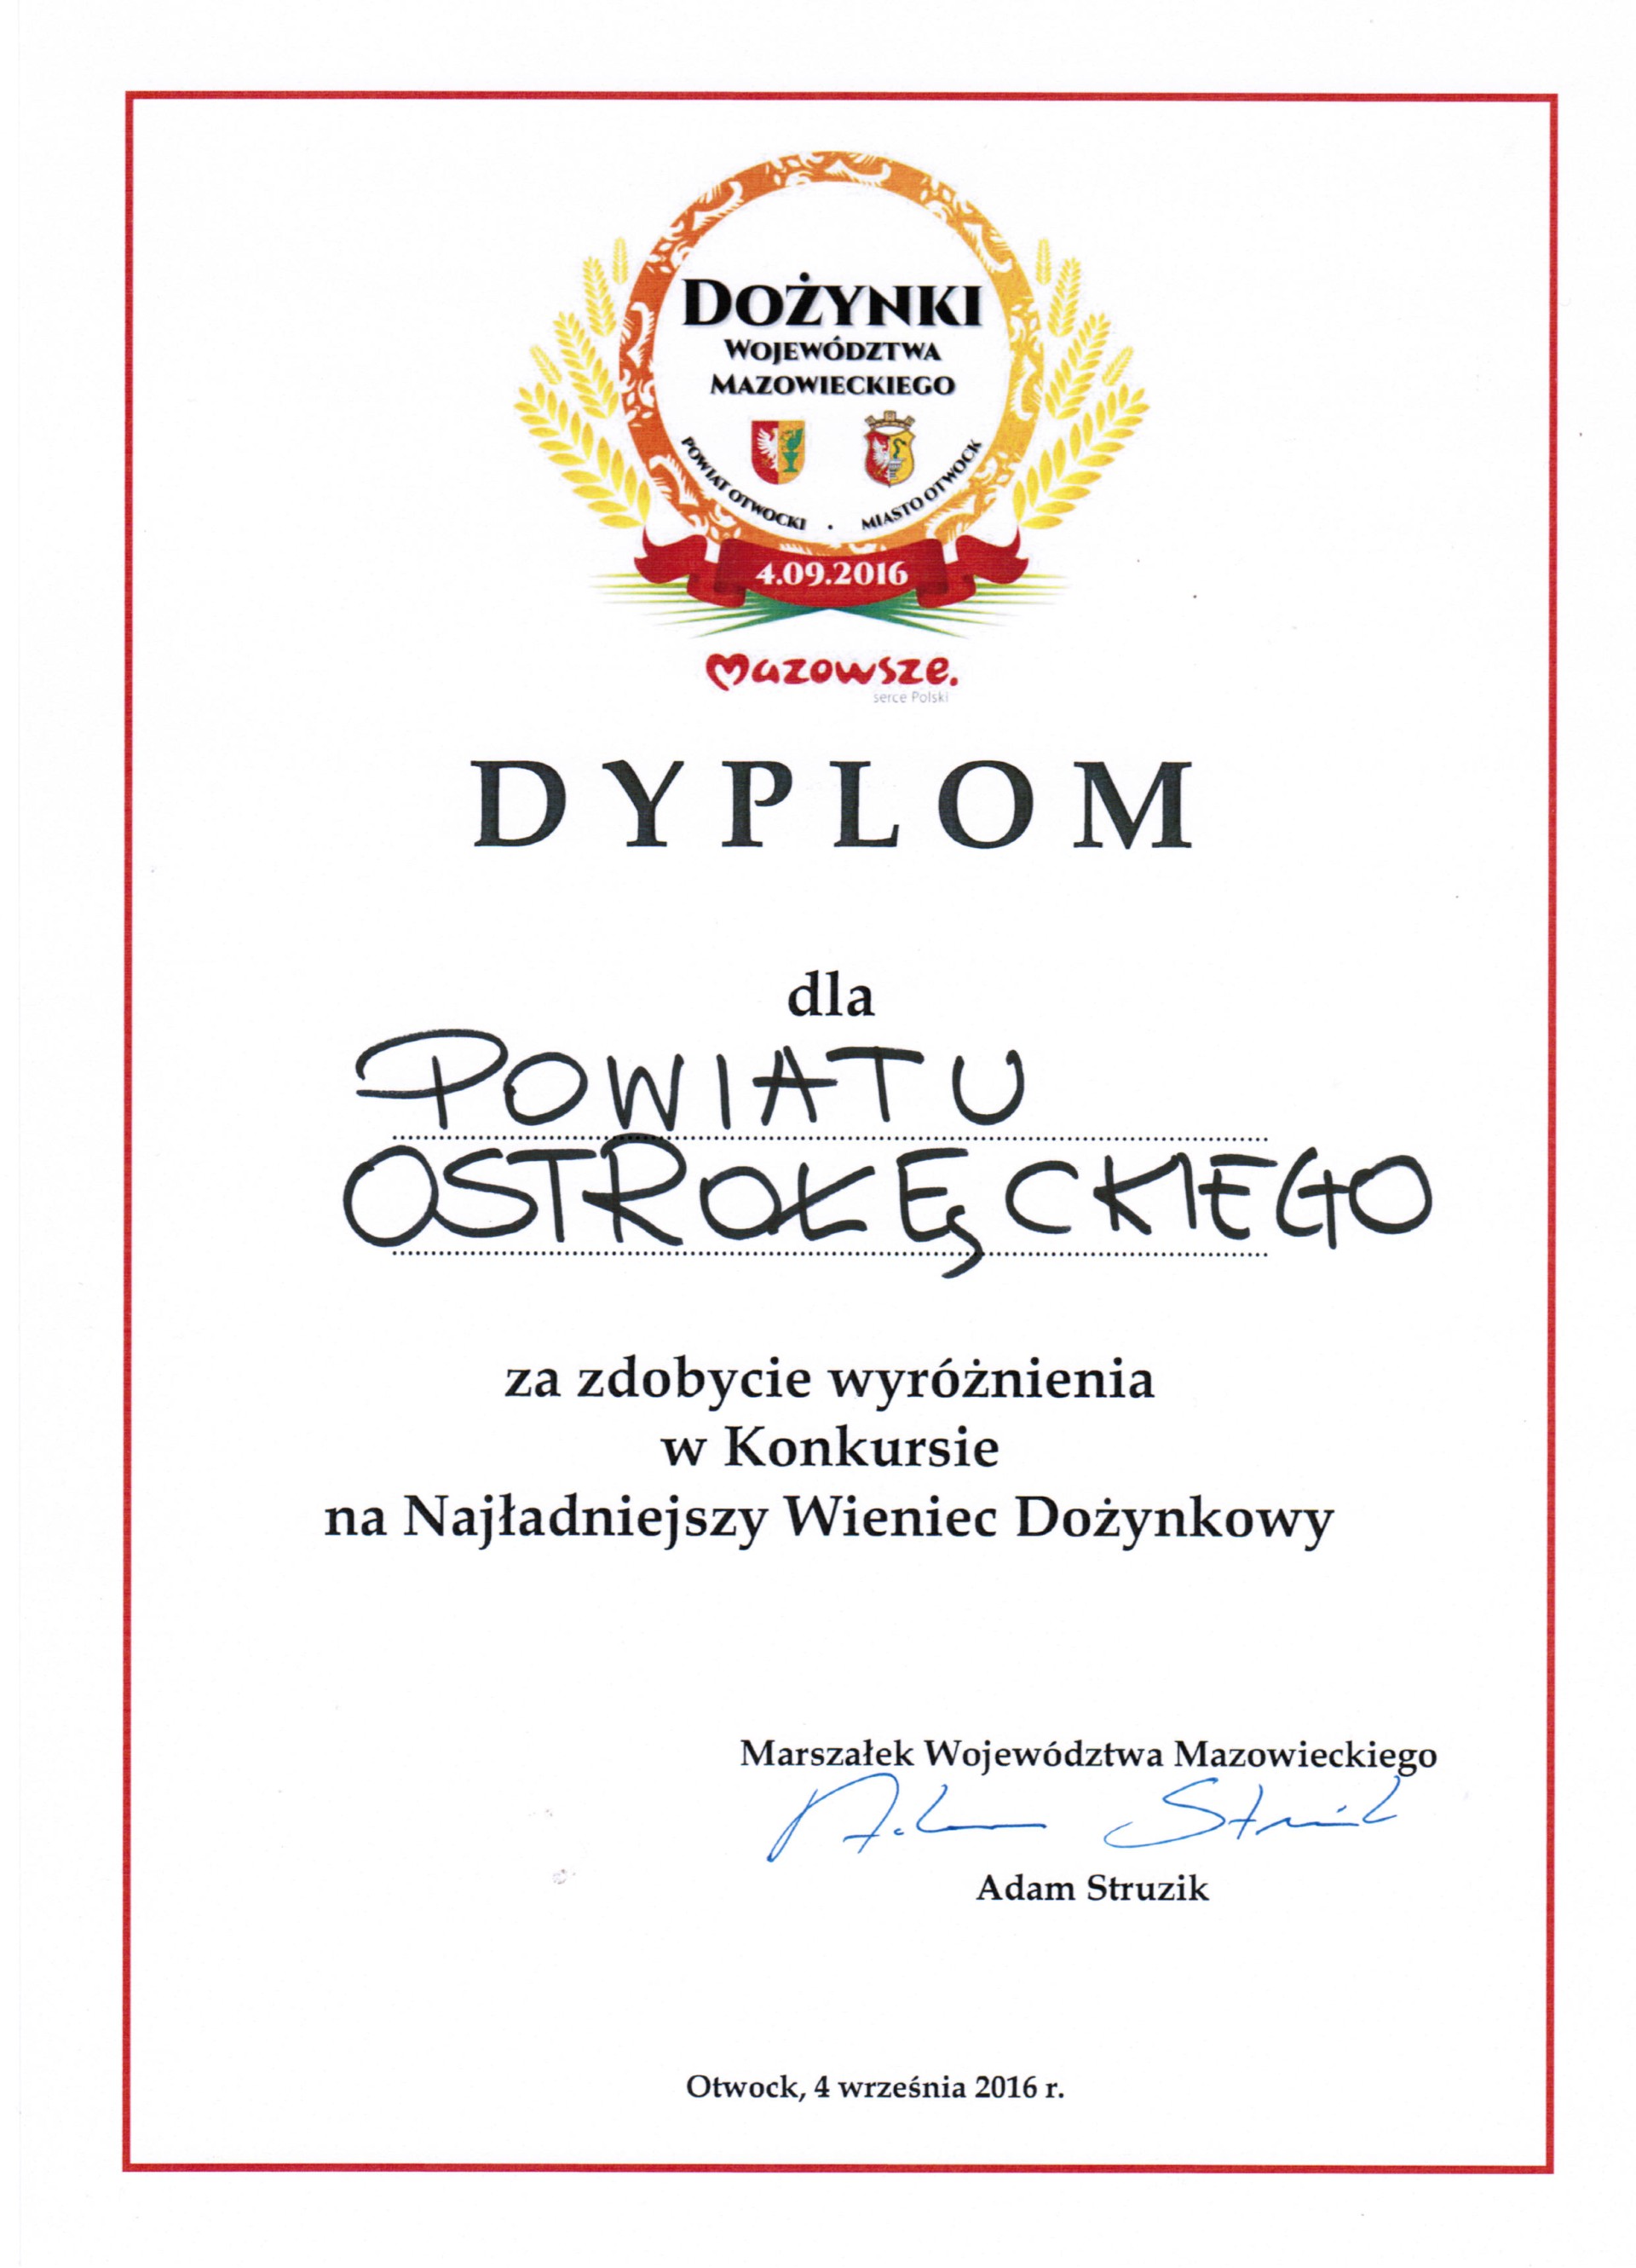 Dyplom dla powiatu ostrołęckiego za zdobycie wyróżnienia w Konkursie na Najładniejszy Wieniec Dożynkowy